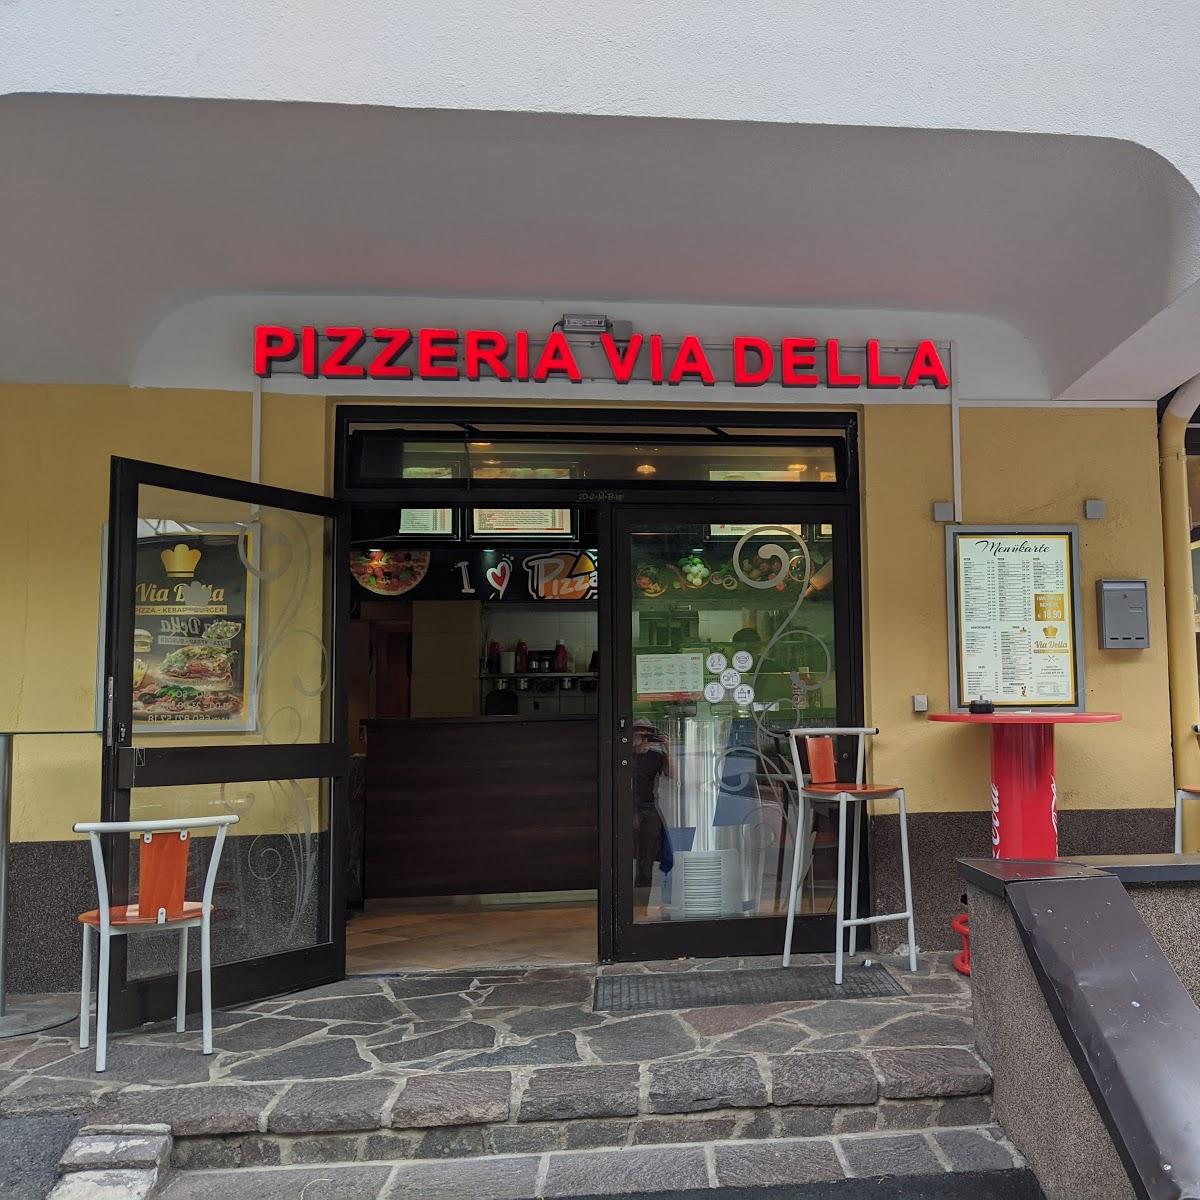 Restaurant "Pizzeria Via Della" in Huben